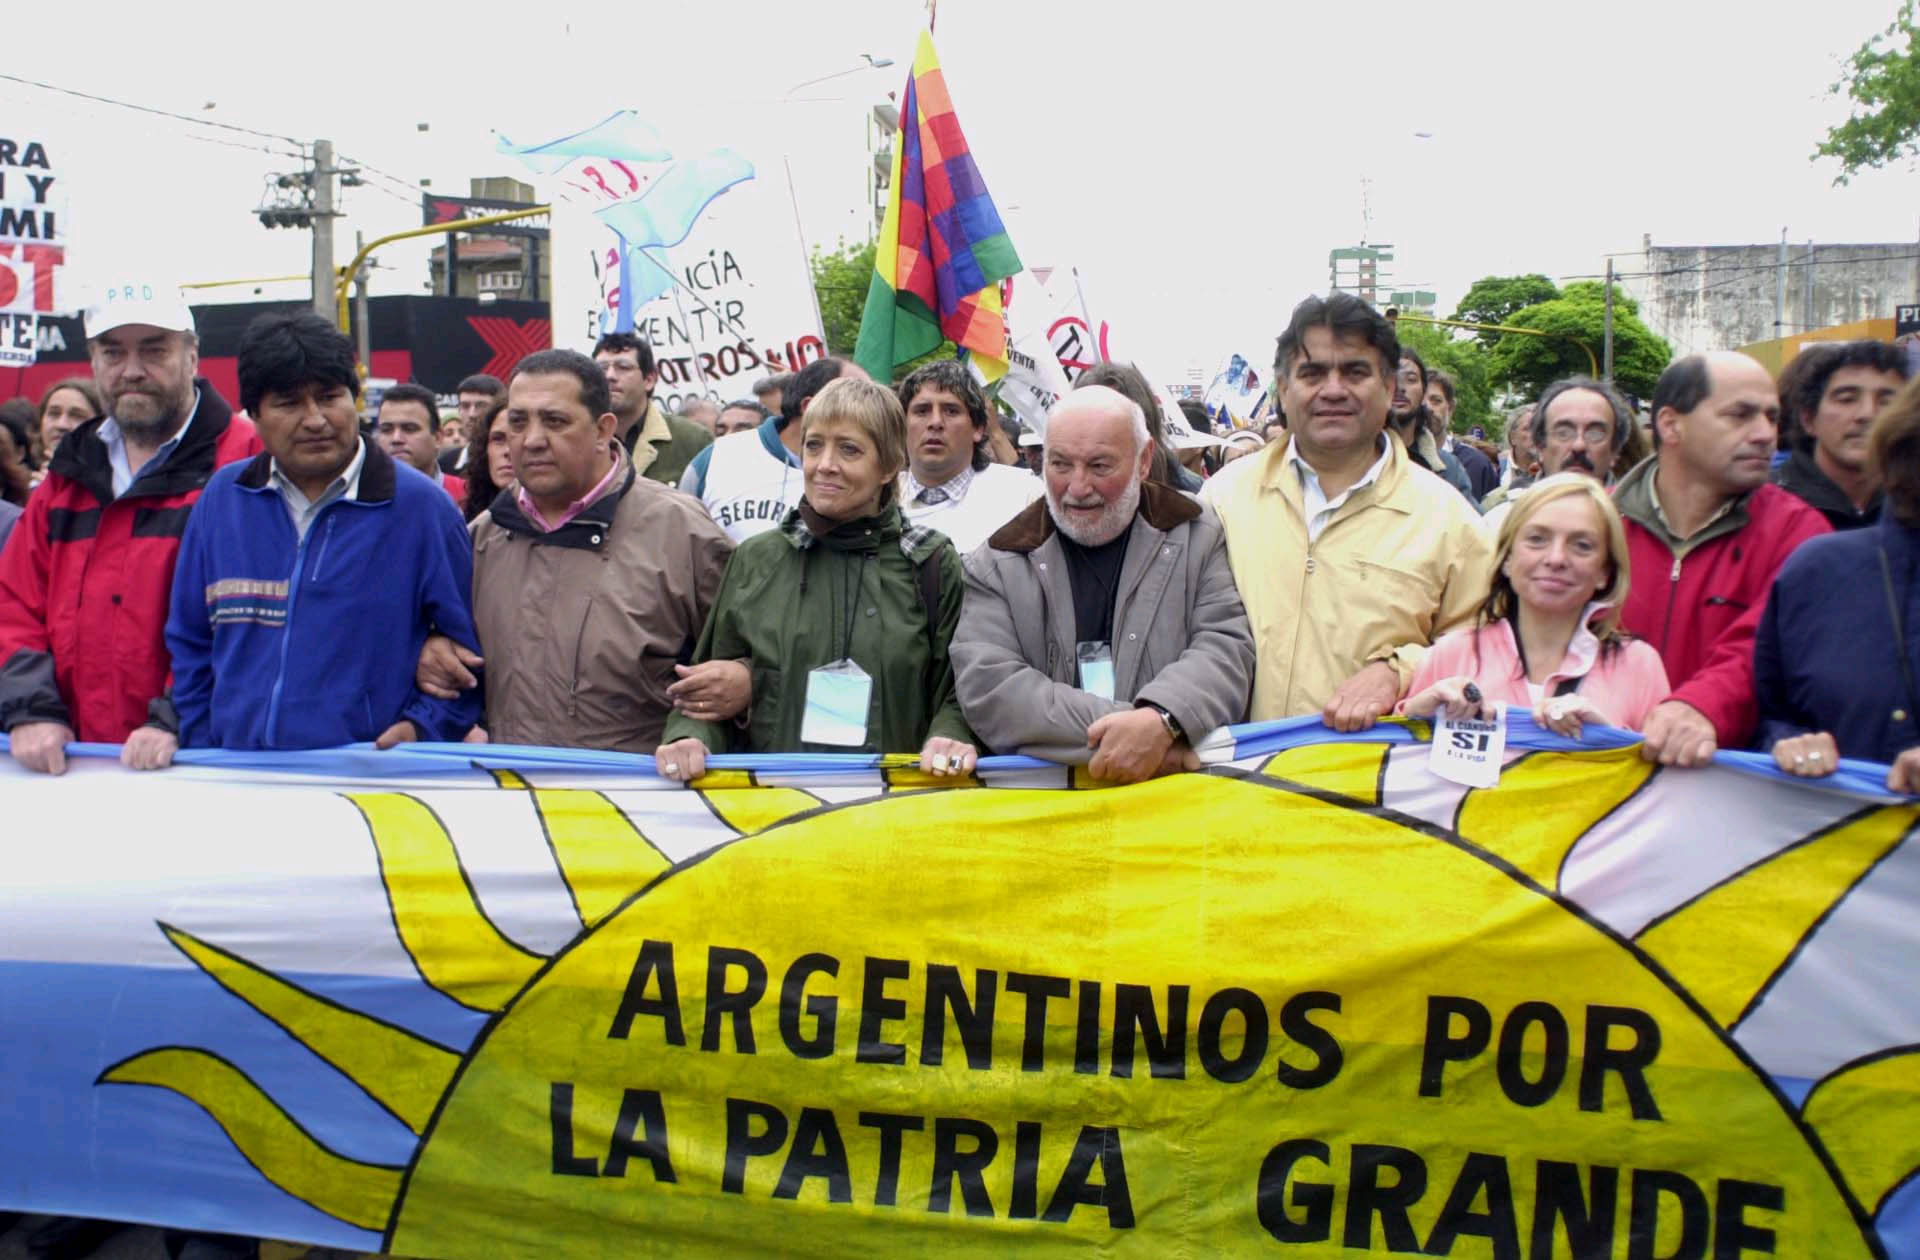  Distintas personalidades entre otros: Miguel Bonasso, Evo Morales, Luis D'Elía, Teresa Parodi, Luis Farinello, Francisco Gutierrez encabezan la marcha 